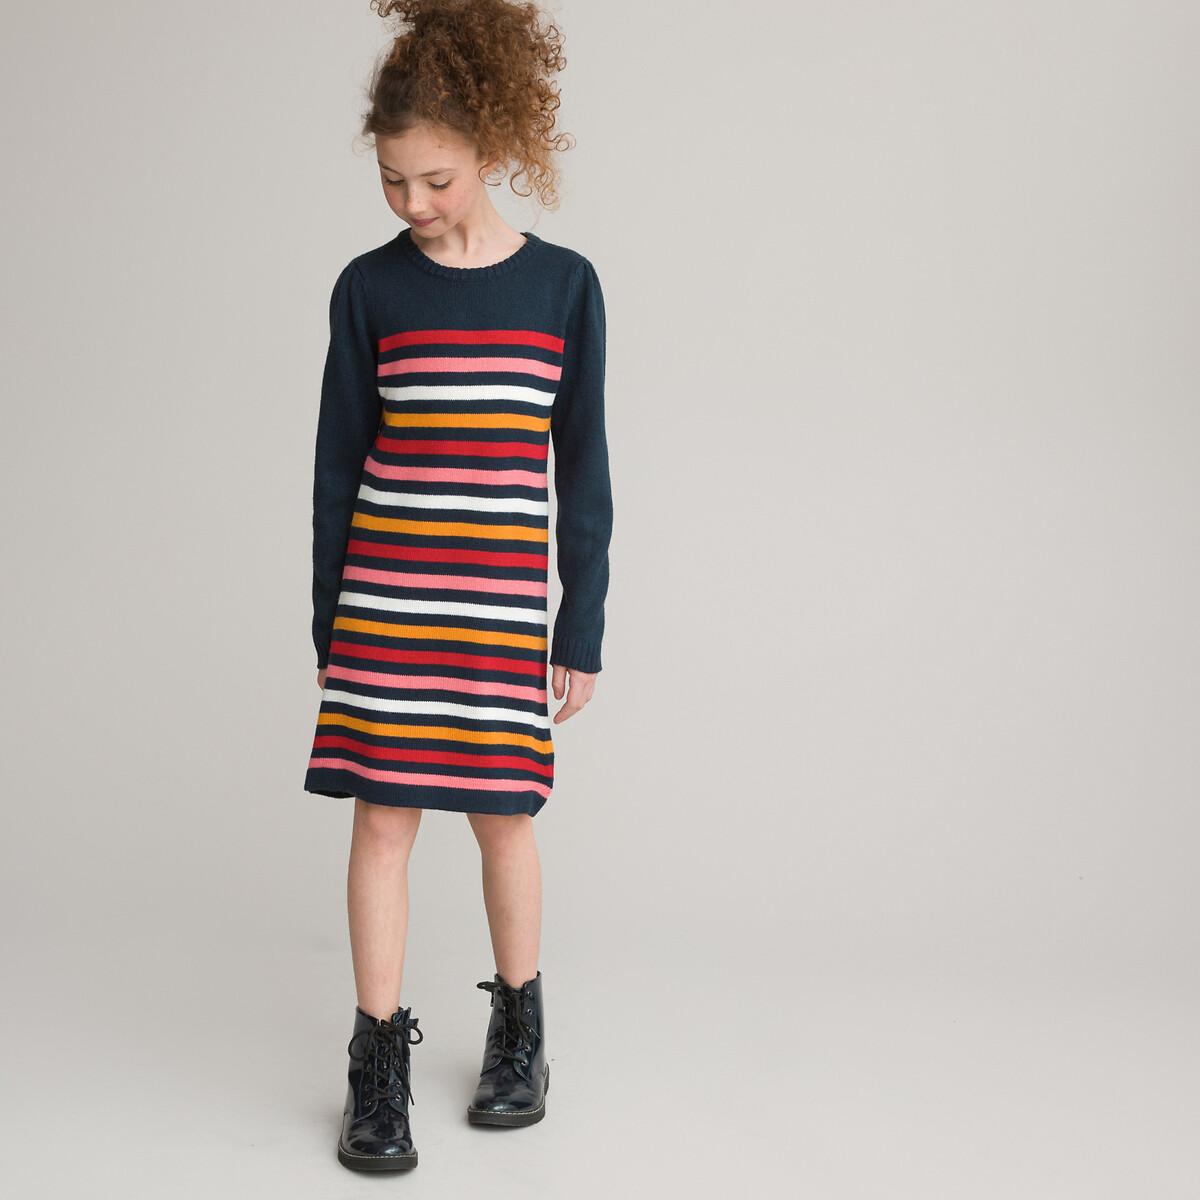 Ριγέ φόρεμα φούτερ πουλόβερ, 3-12 χρονών ΠΑΙΔΙ | Φορέματα | Μακριά ή 3/4 μανίκια